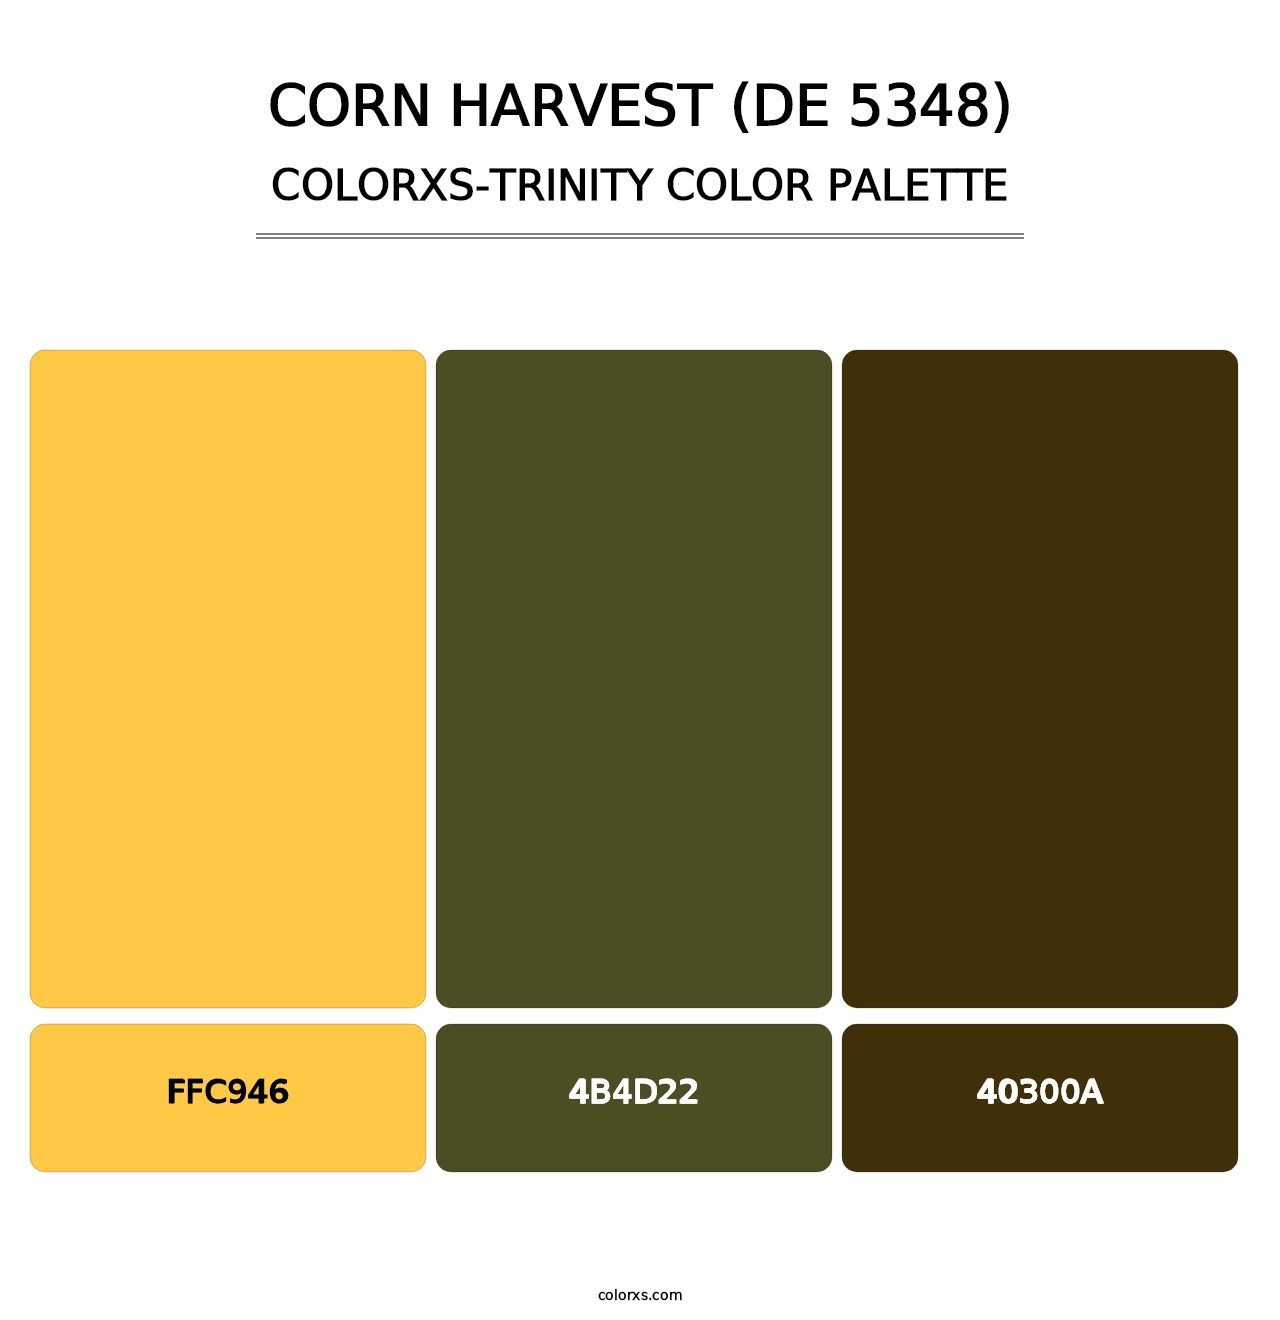 Corn Harvest (DE 5348) - Colorxs Trinity Palette